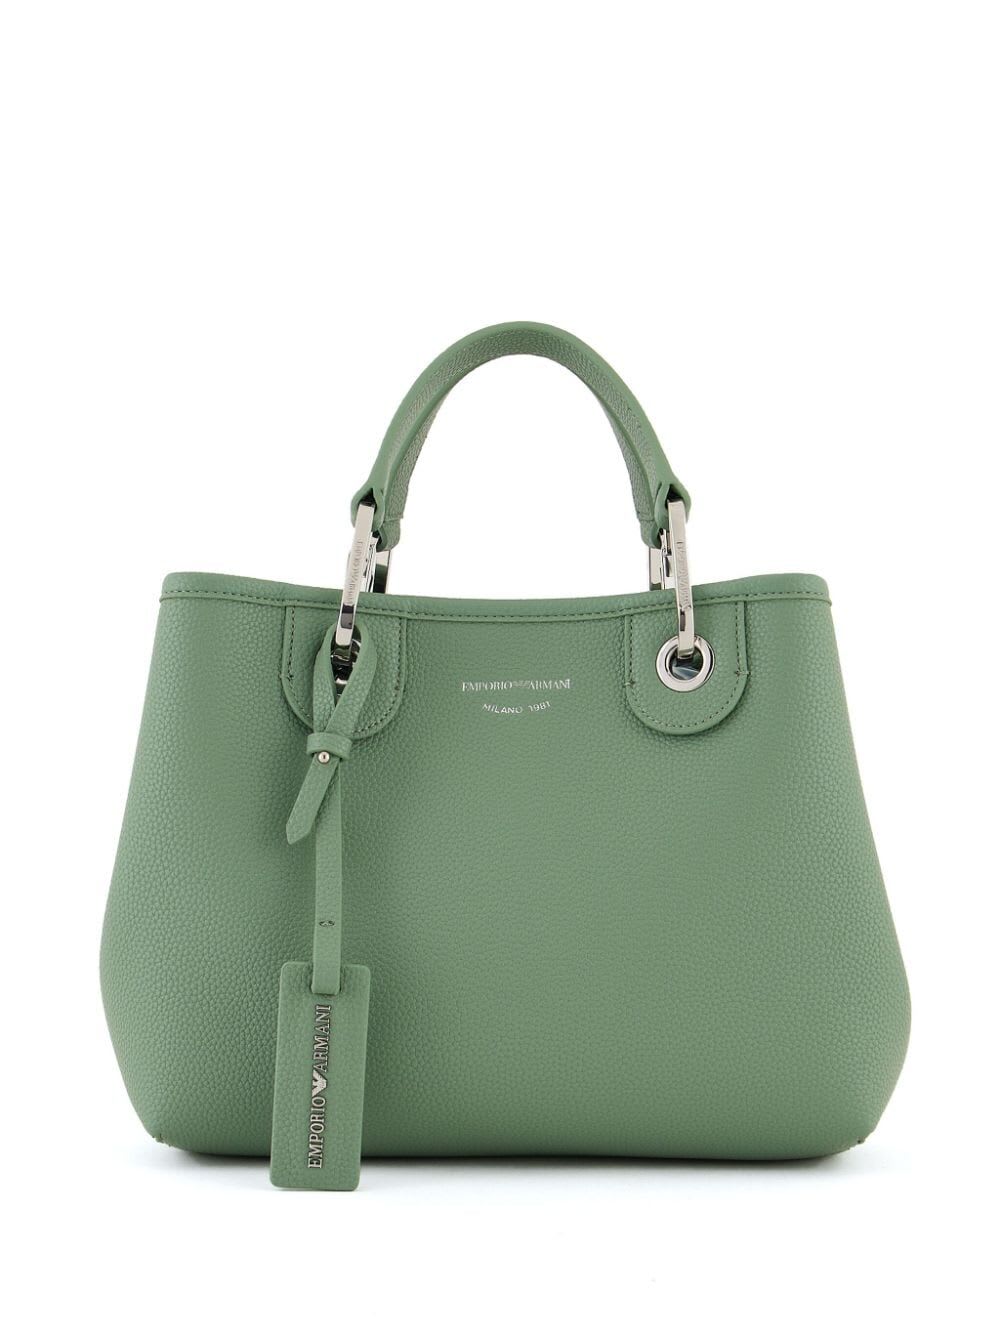 Emporio Armani Shopping Bag In Green